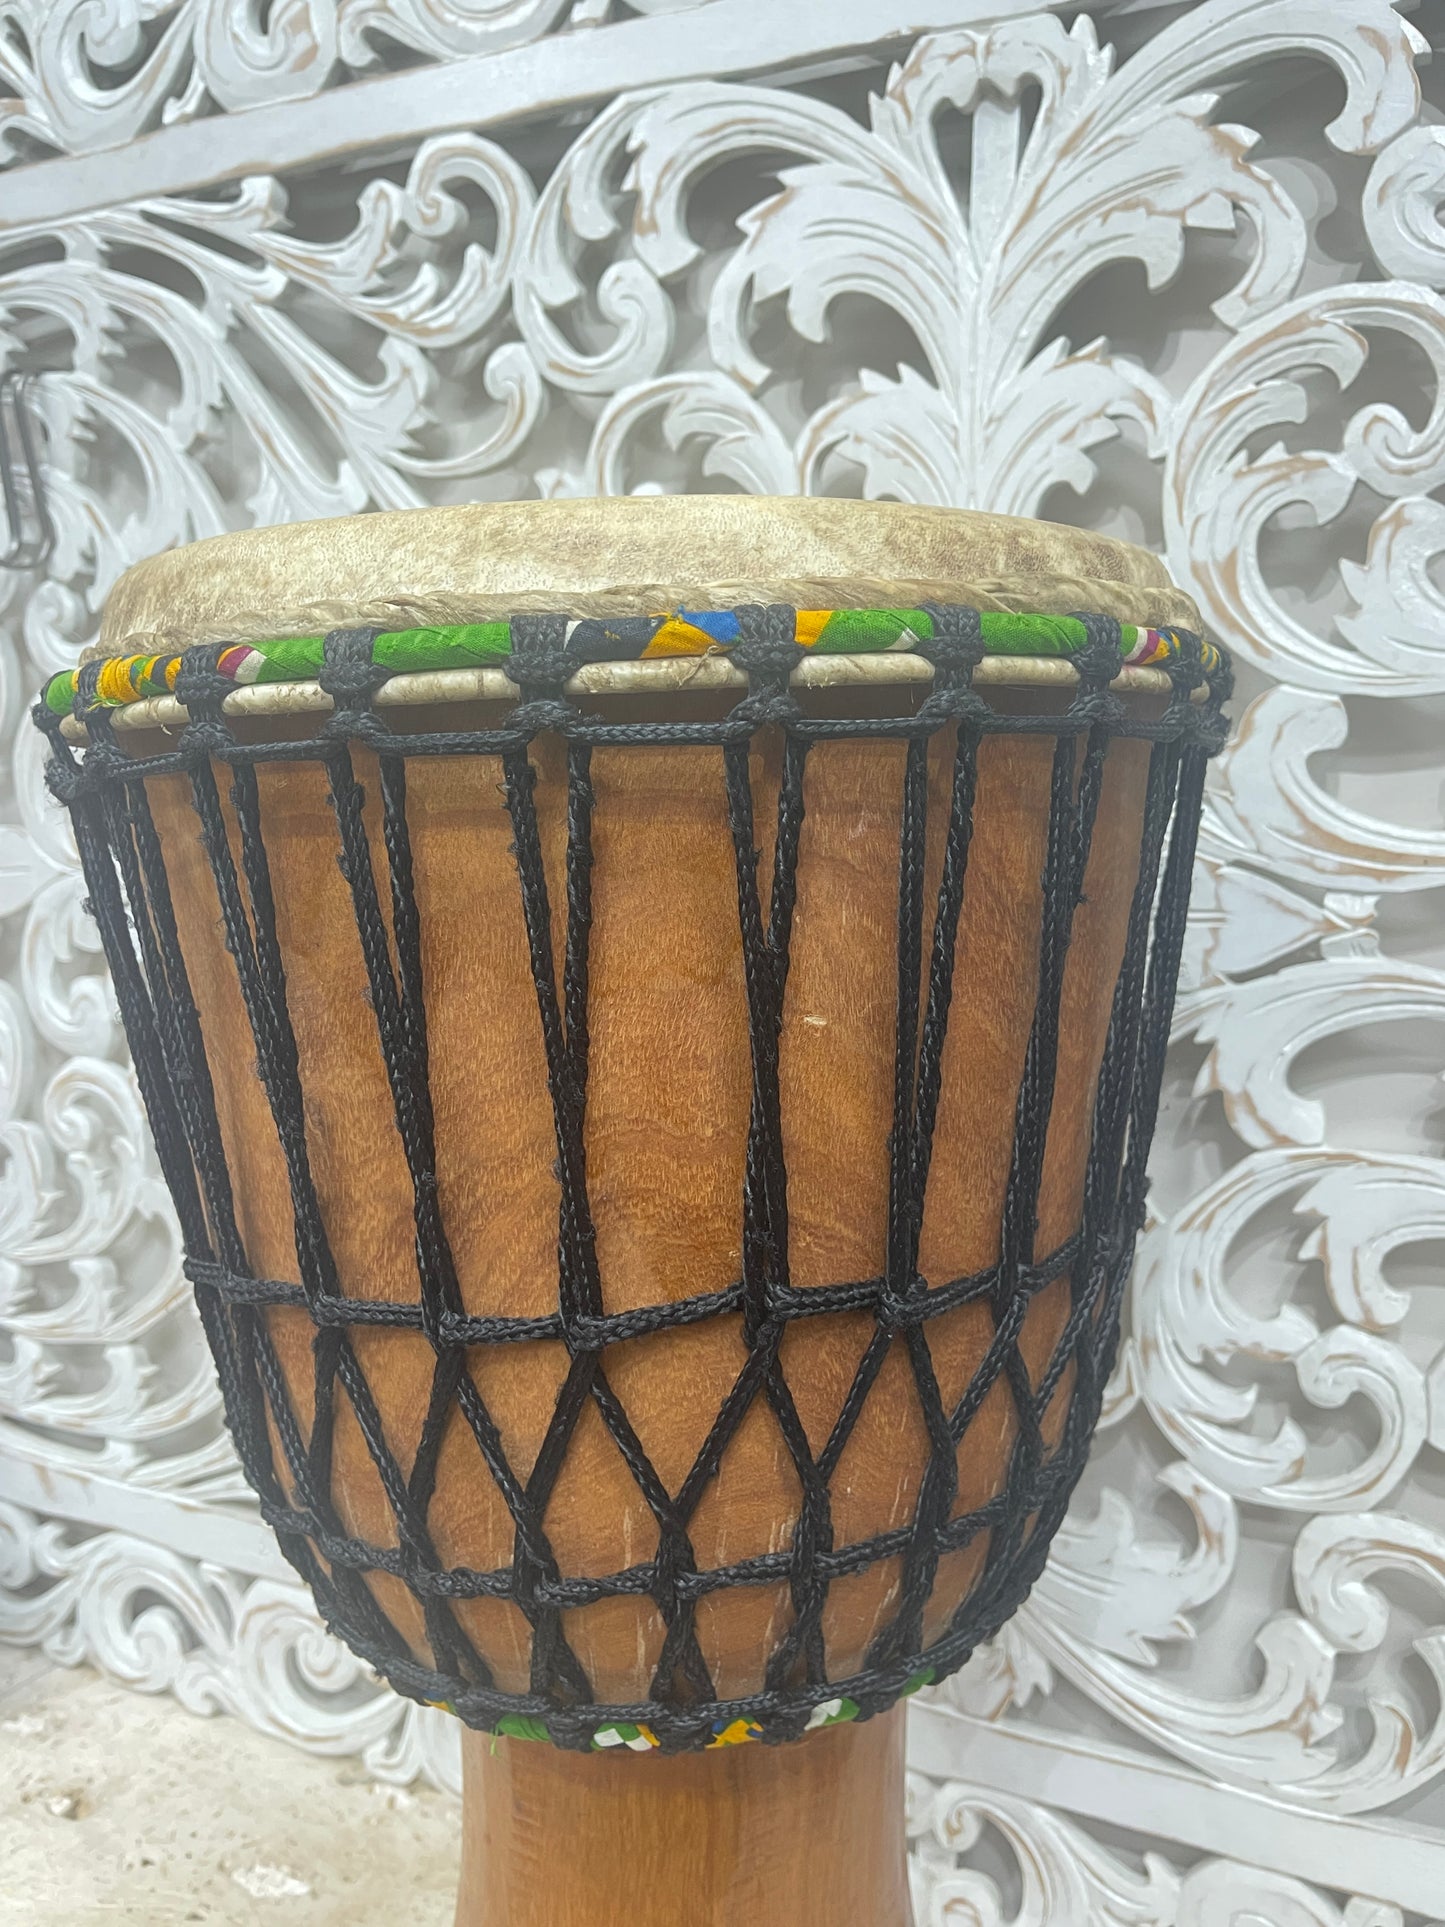 Large Ghana Djembe Drums